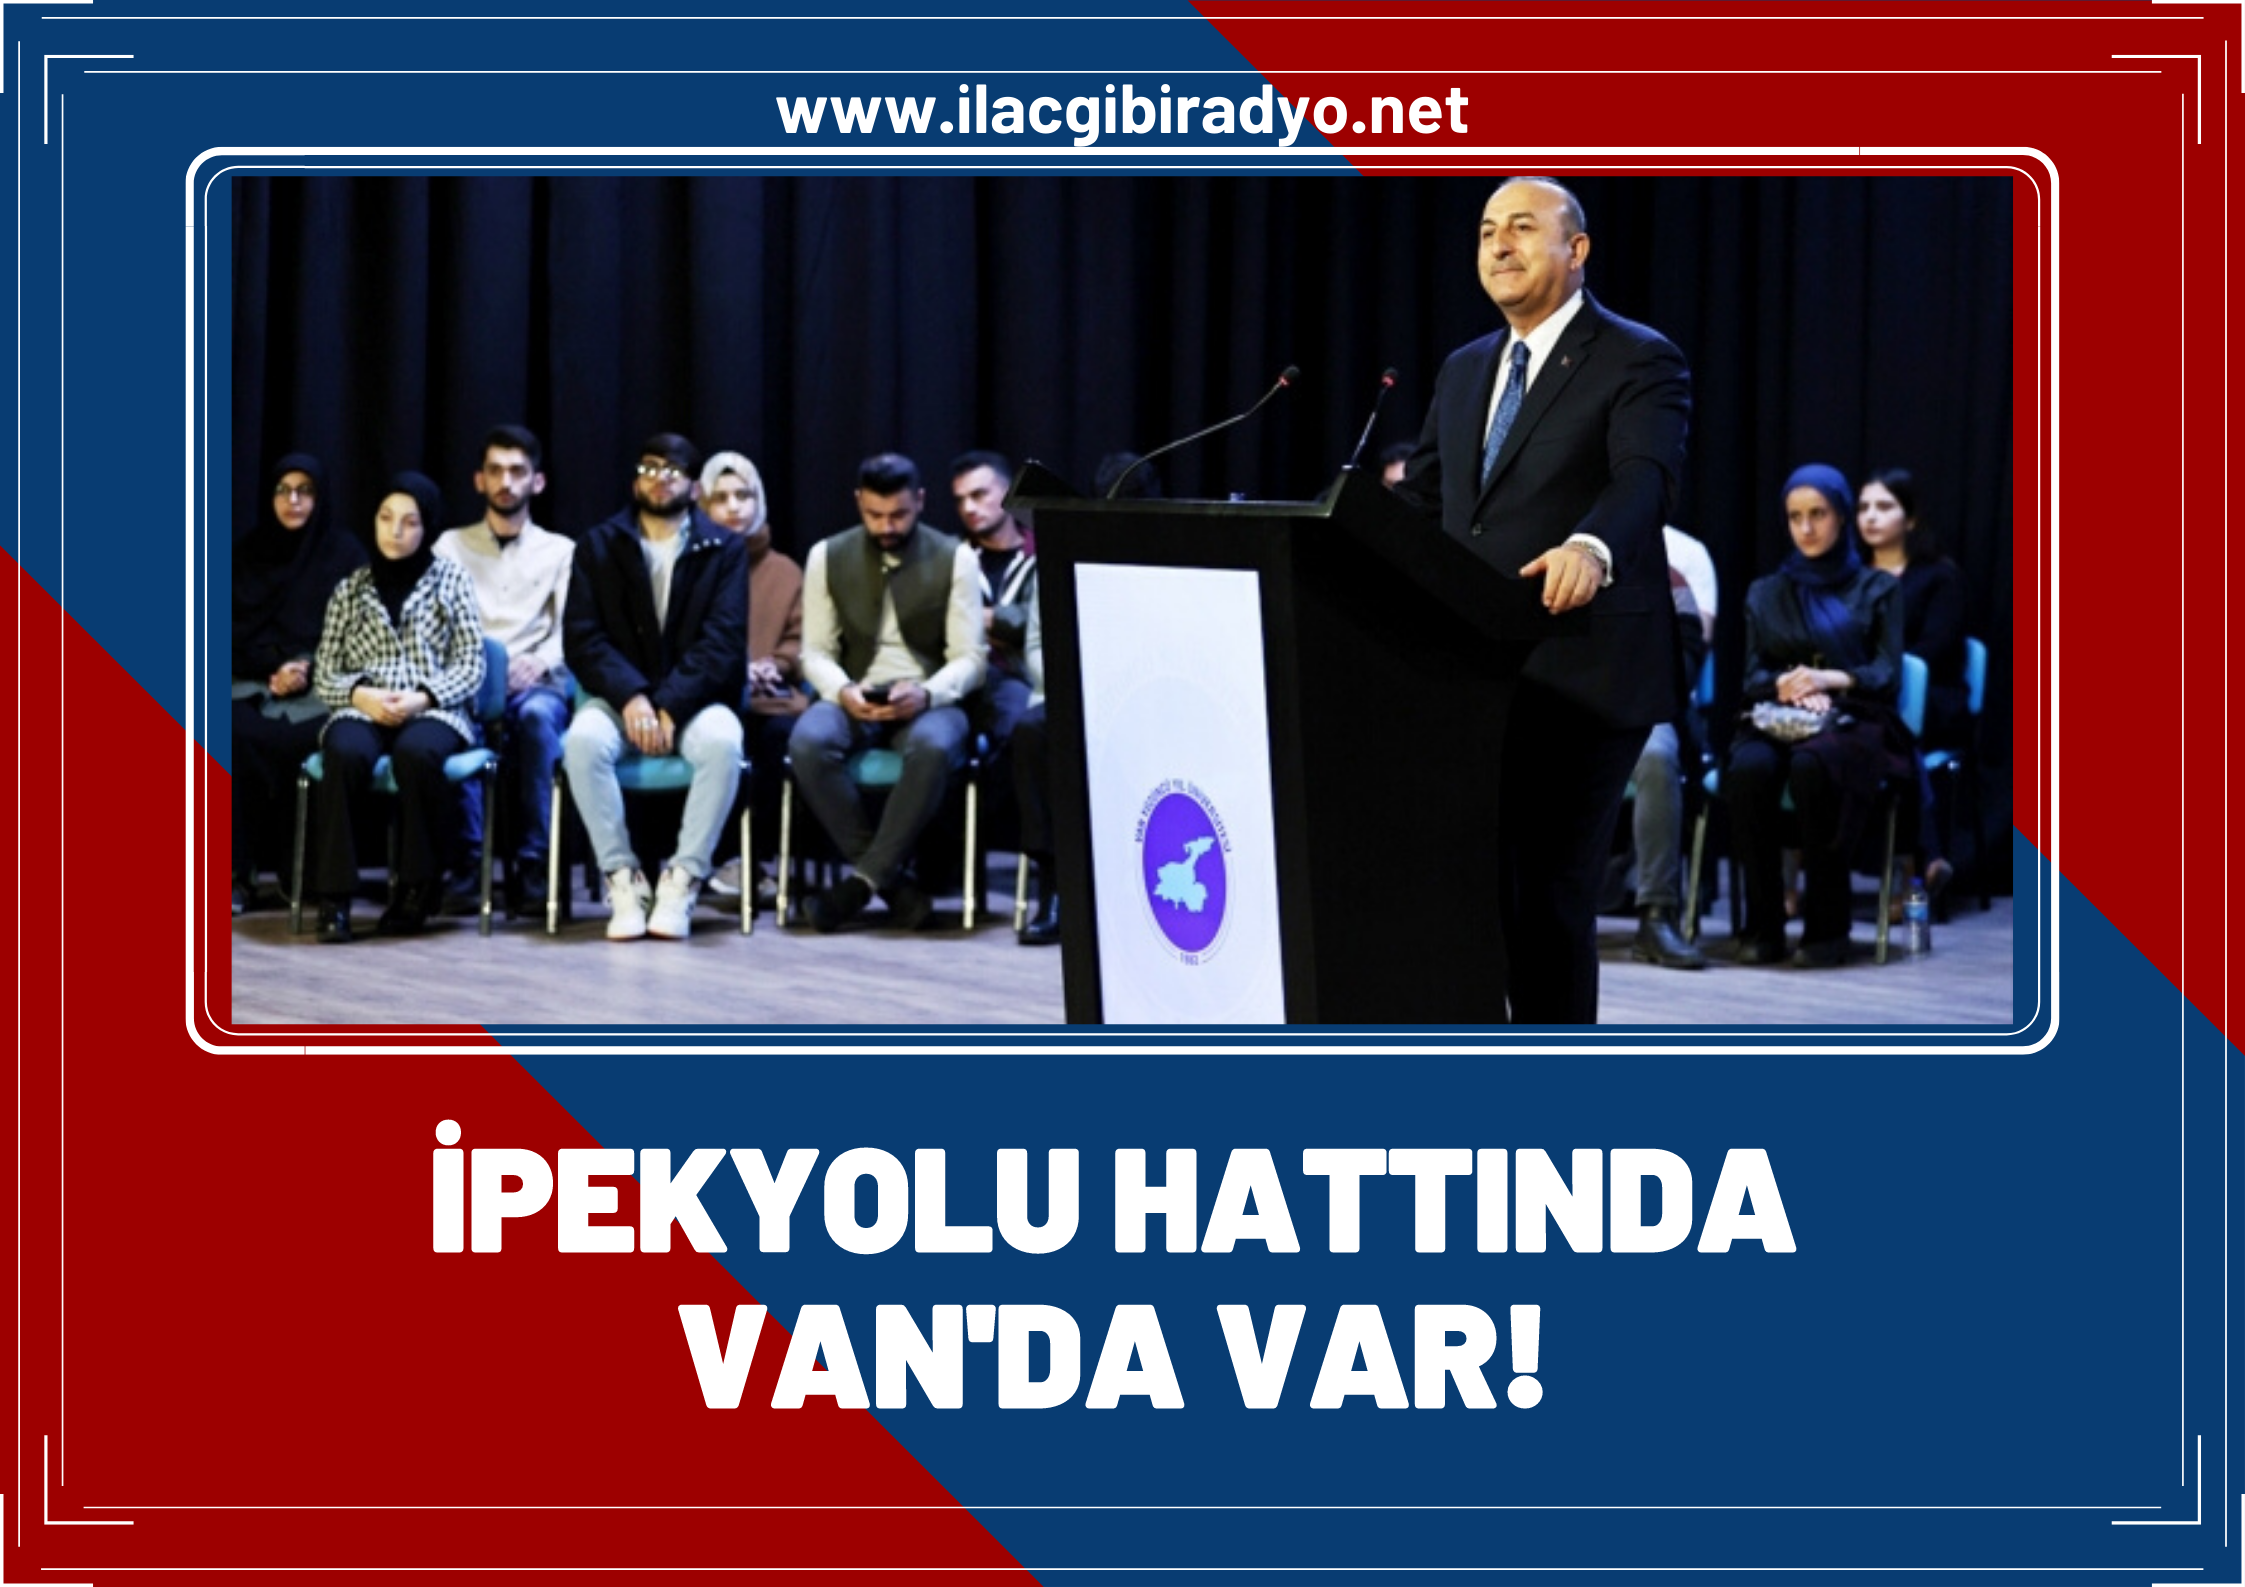 Bakan Çavuşoğlu: Van, İpekyolu’ndaki merkezimiz!